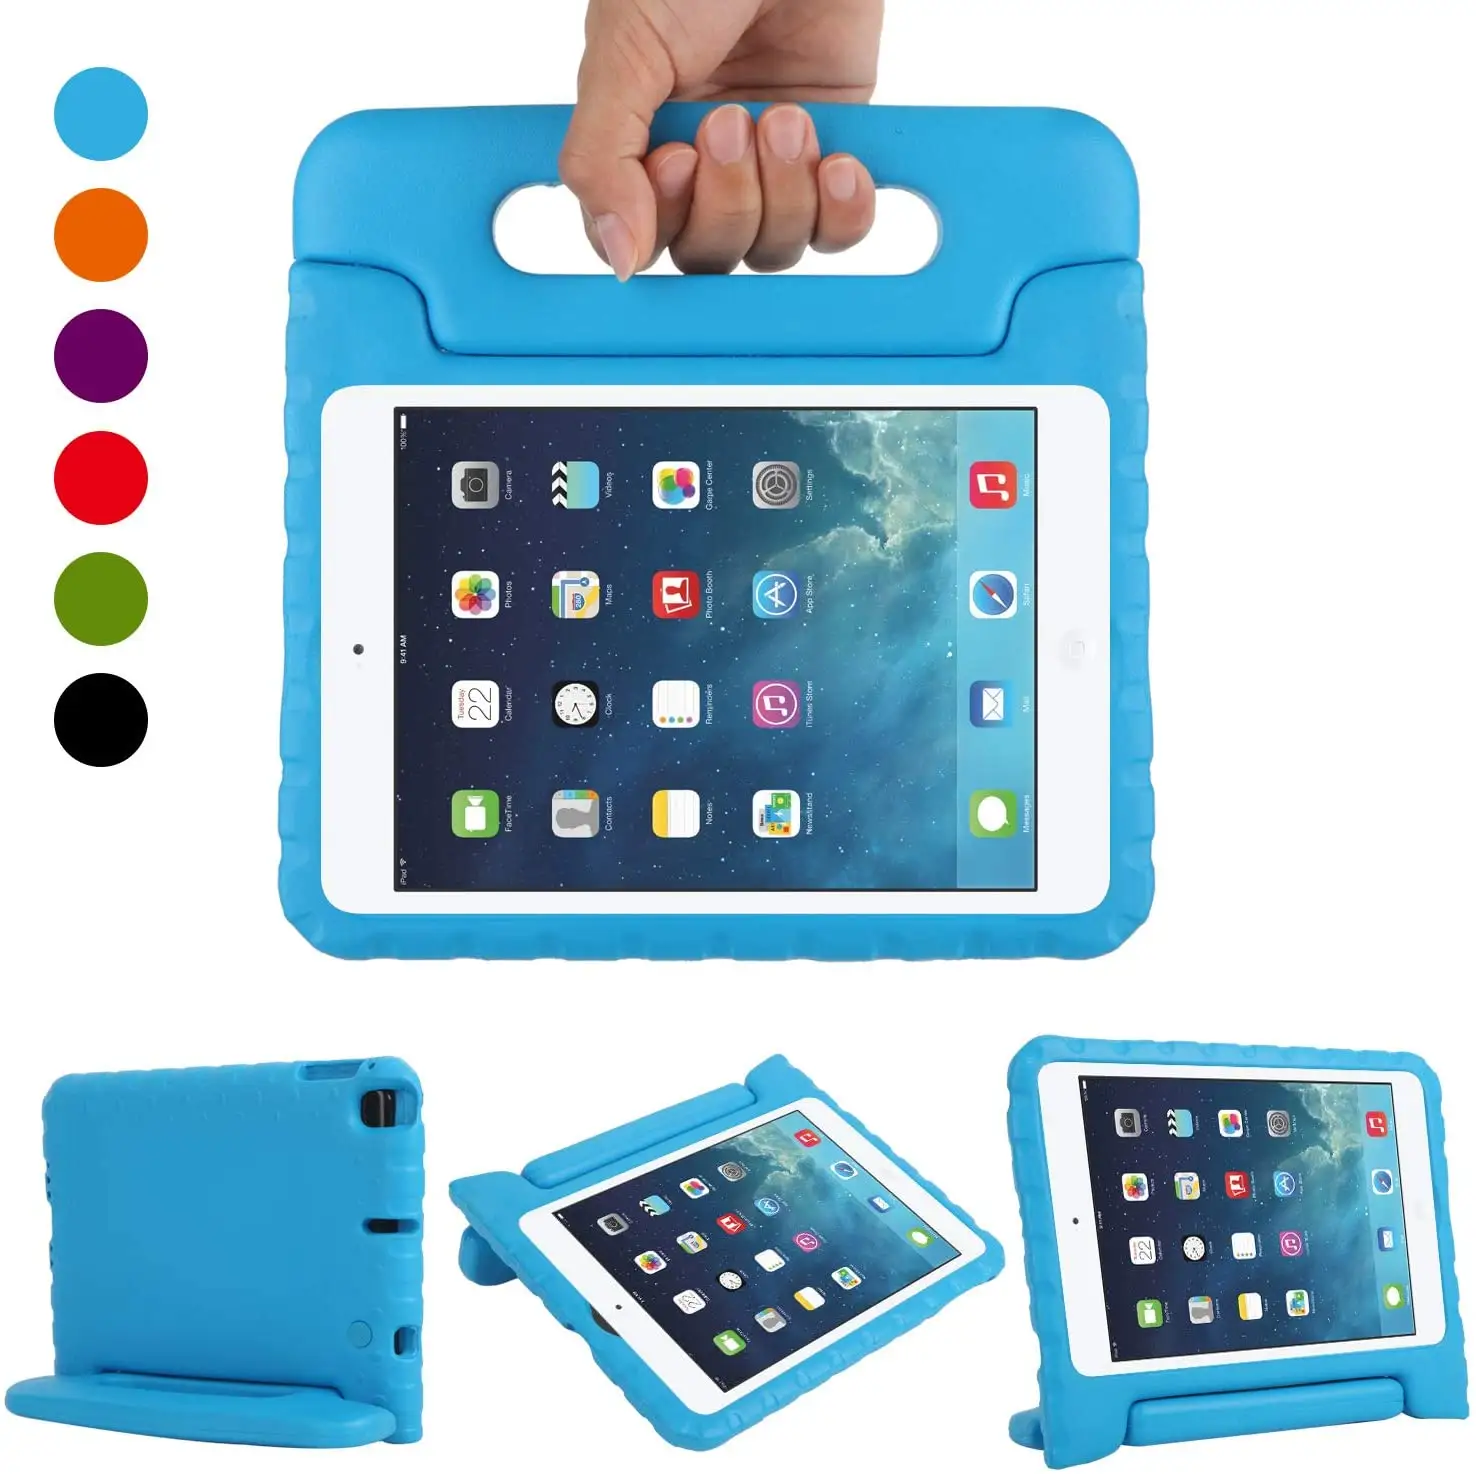 כל מכירה EVA קצף מקרה עבור ipad מיני, חזק מגן עבור ipad מיני, כיסוי עבור apple iPad mini 1 2 3 4 5 עם מעמד ידית